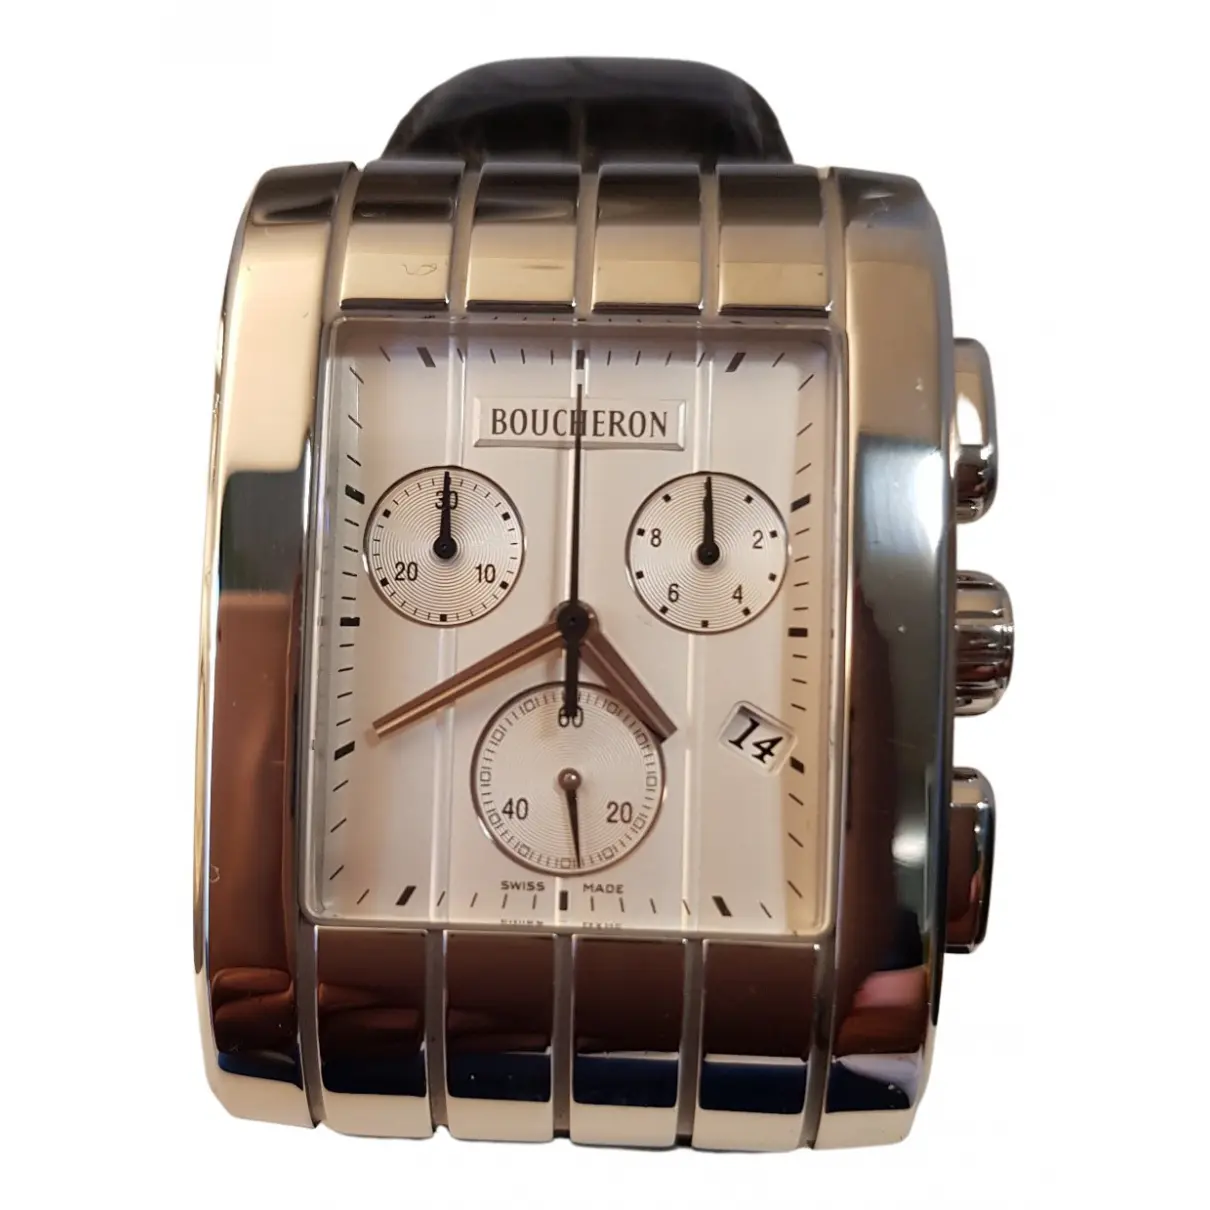 Buy Boucheron Reflet watch online